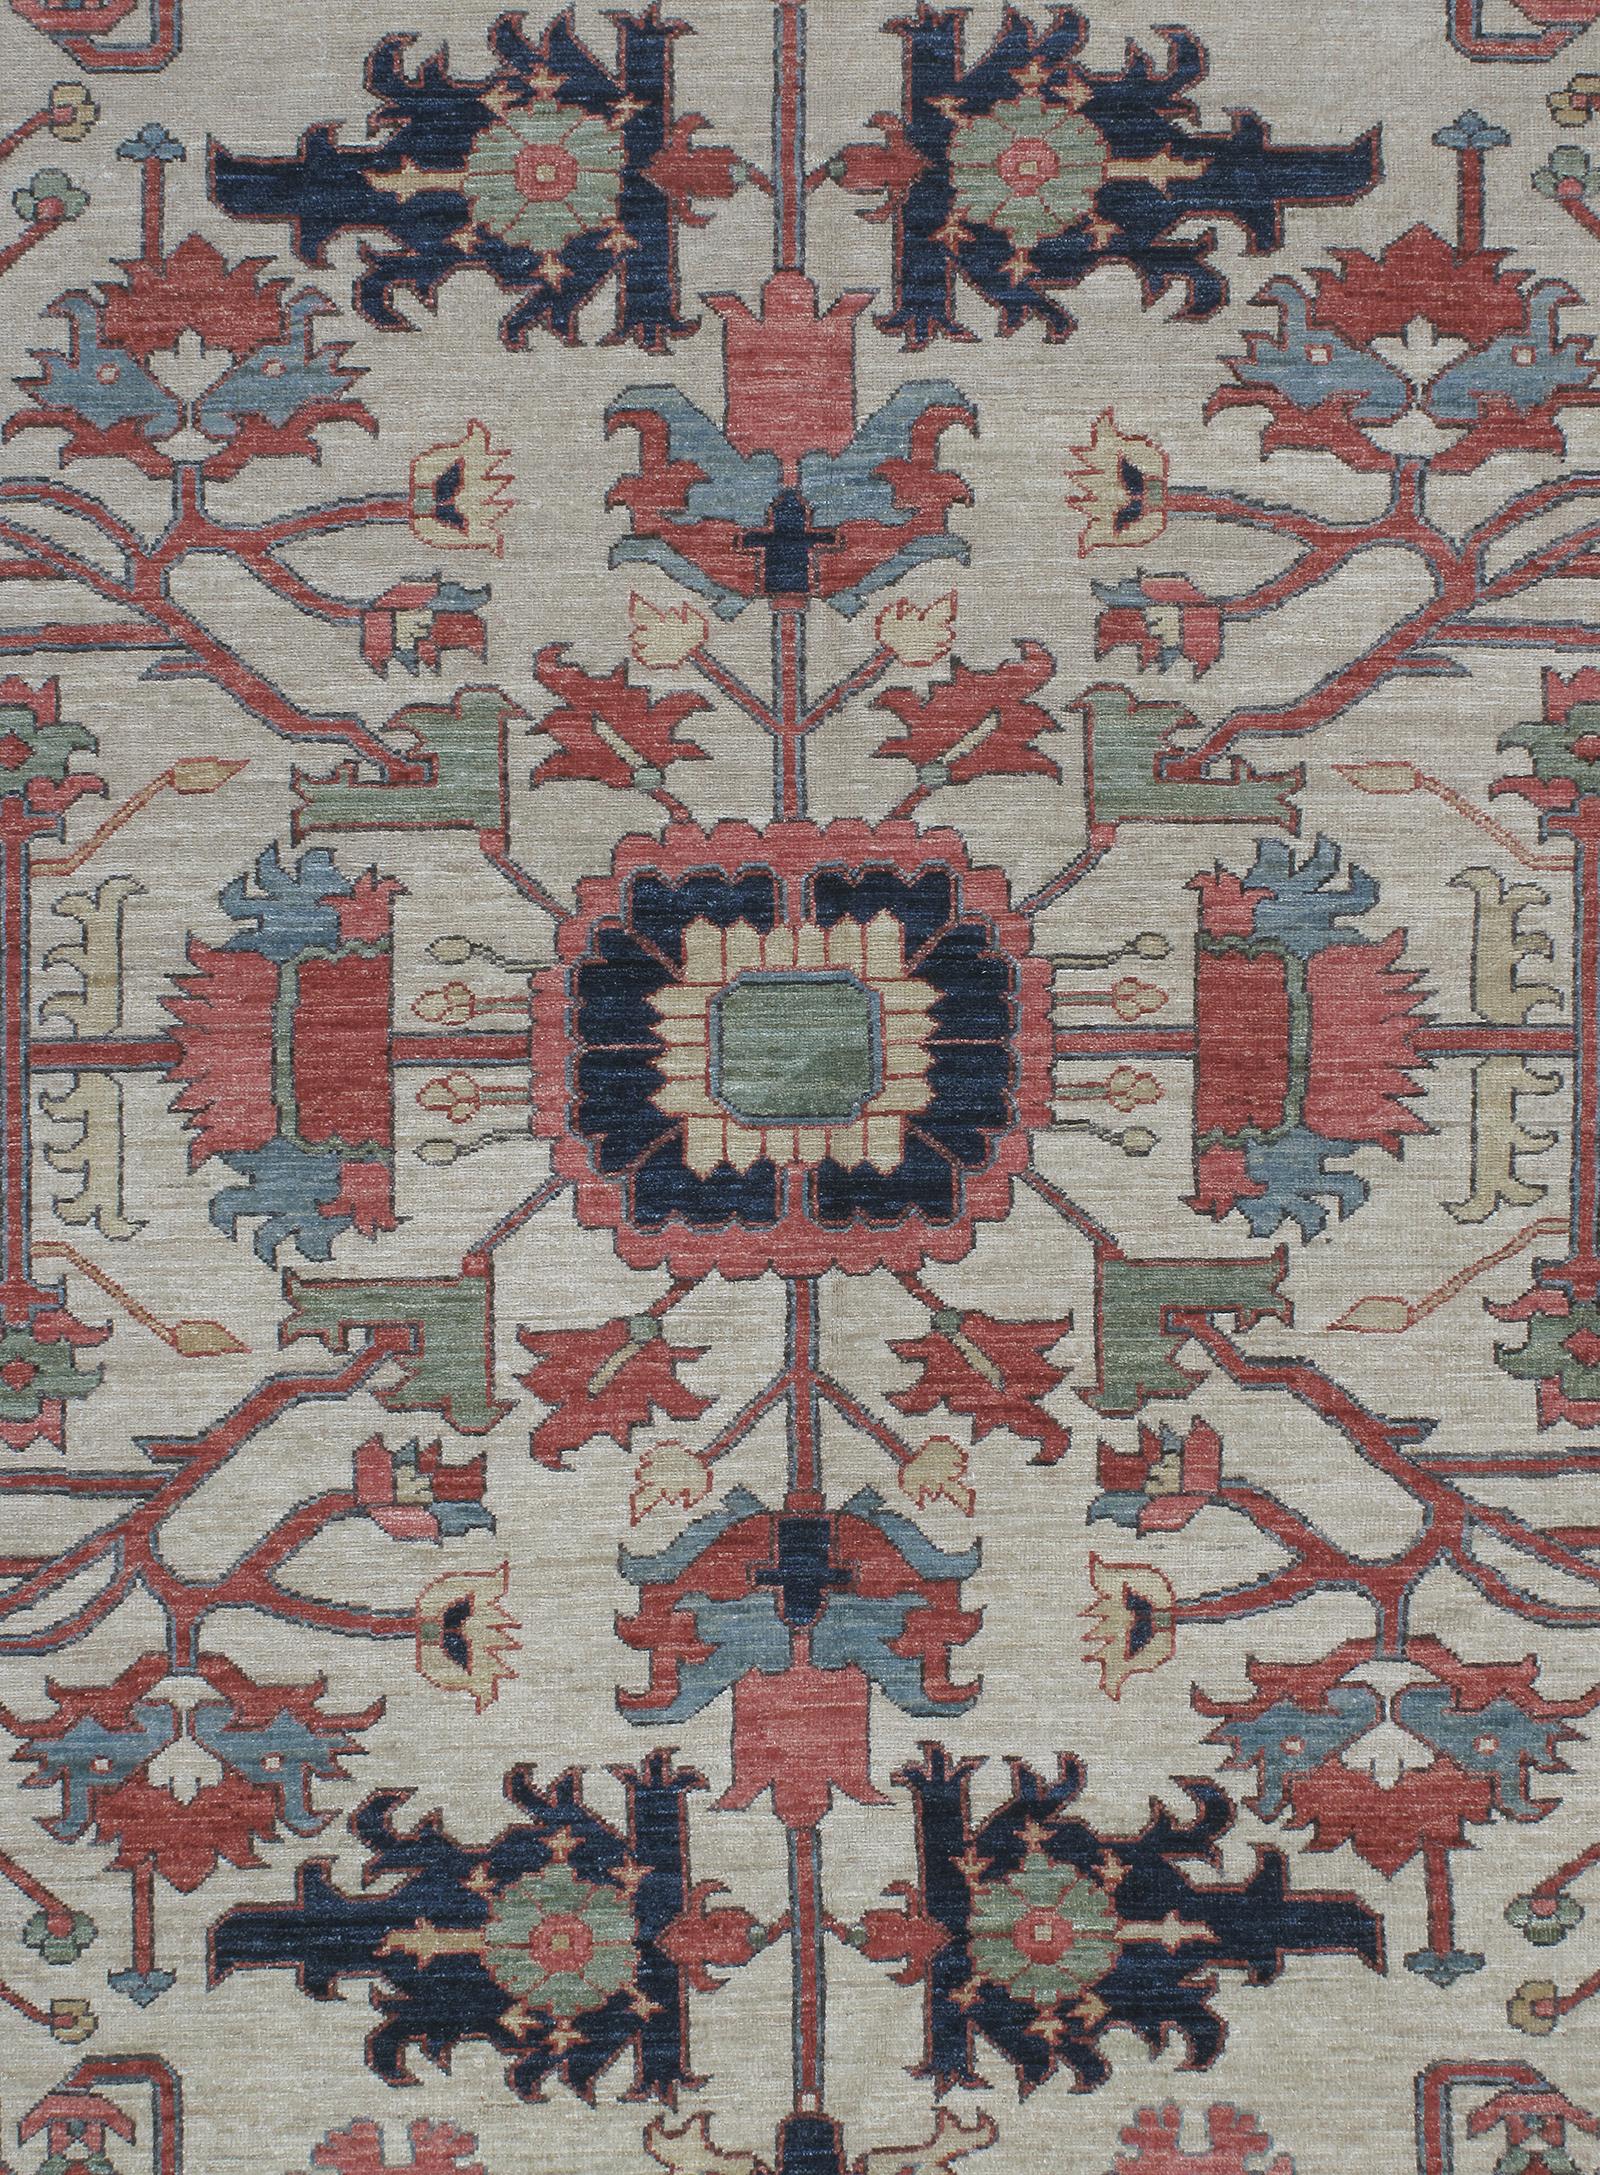 Dieser traditionelle Teppich ist den berühmten Heriz-Teppichen nachempfunden, die im Nordwesten Irans hergestellt wurden und für ihre außergewöhnliche Haltbarkeit bekannt sind. NASIRI setzt die Produktion dieser hochwertigen Teppiche unter